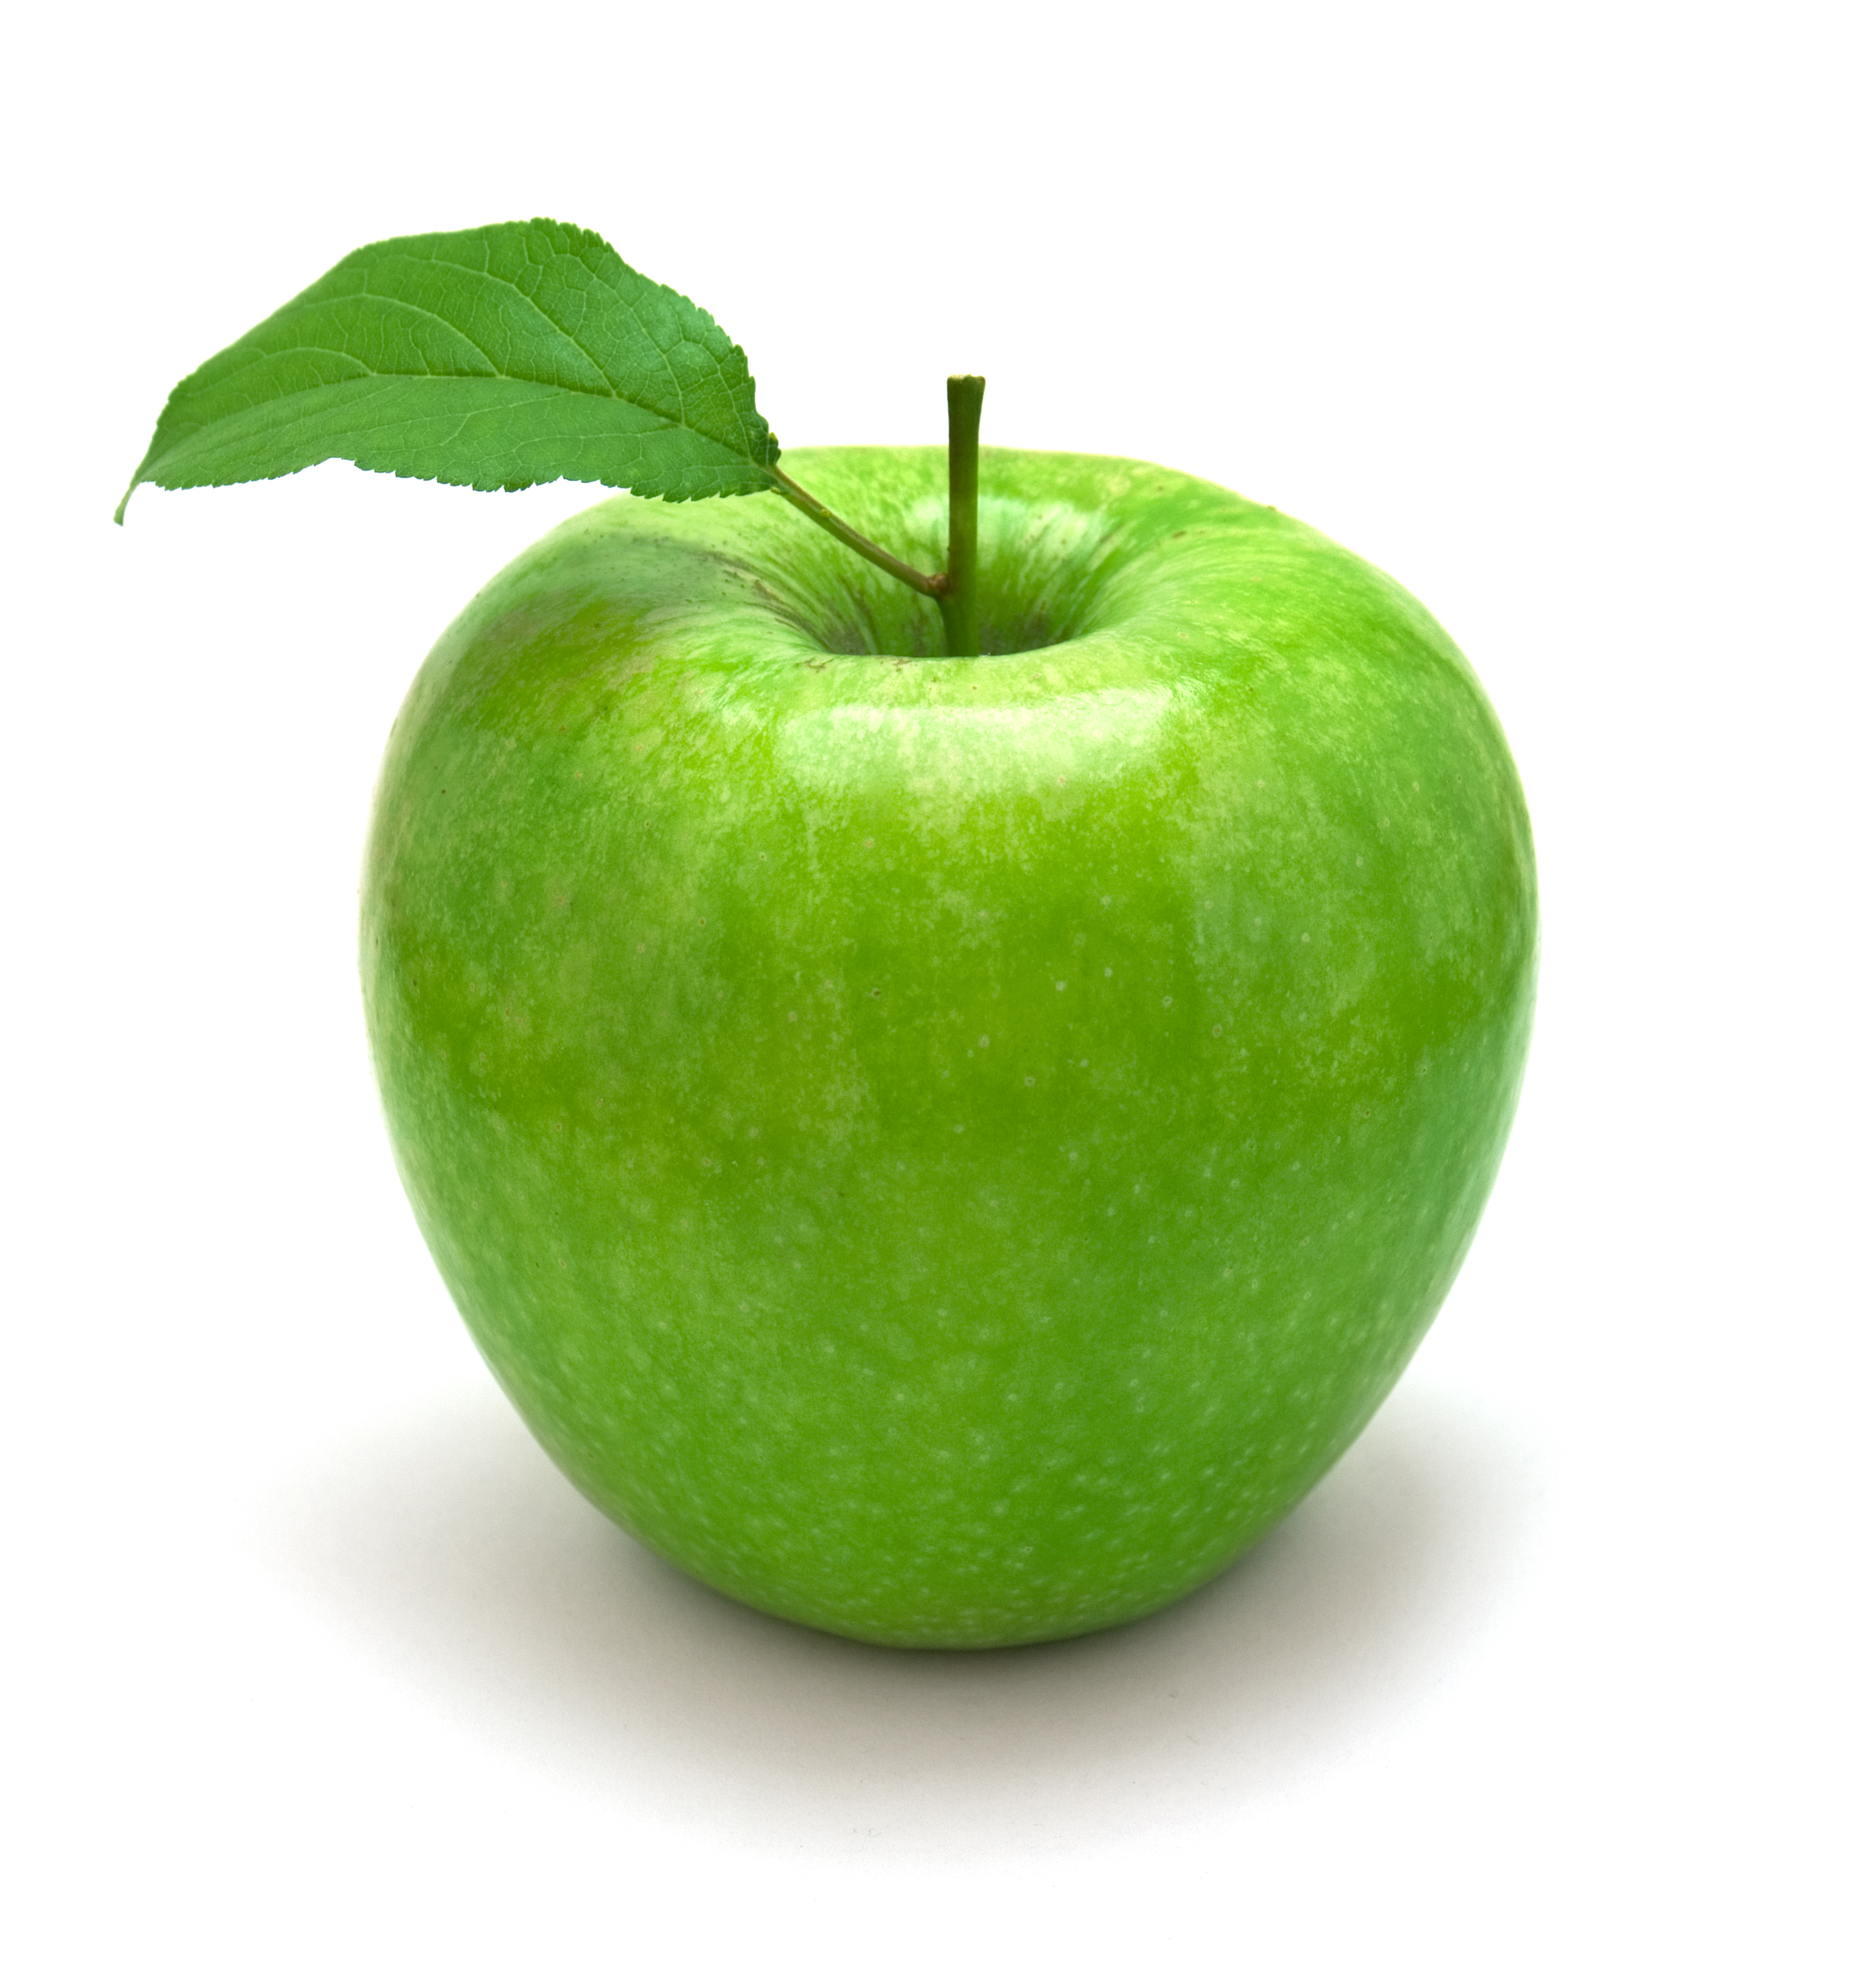 녹색 사과 벽지,스미스 할머니,초록,자연 식품,사과,과일